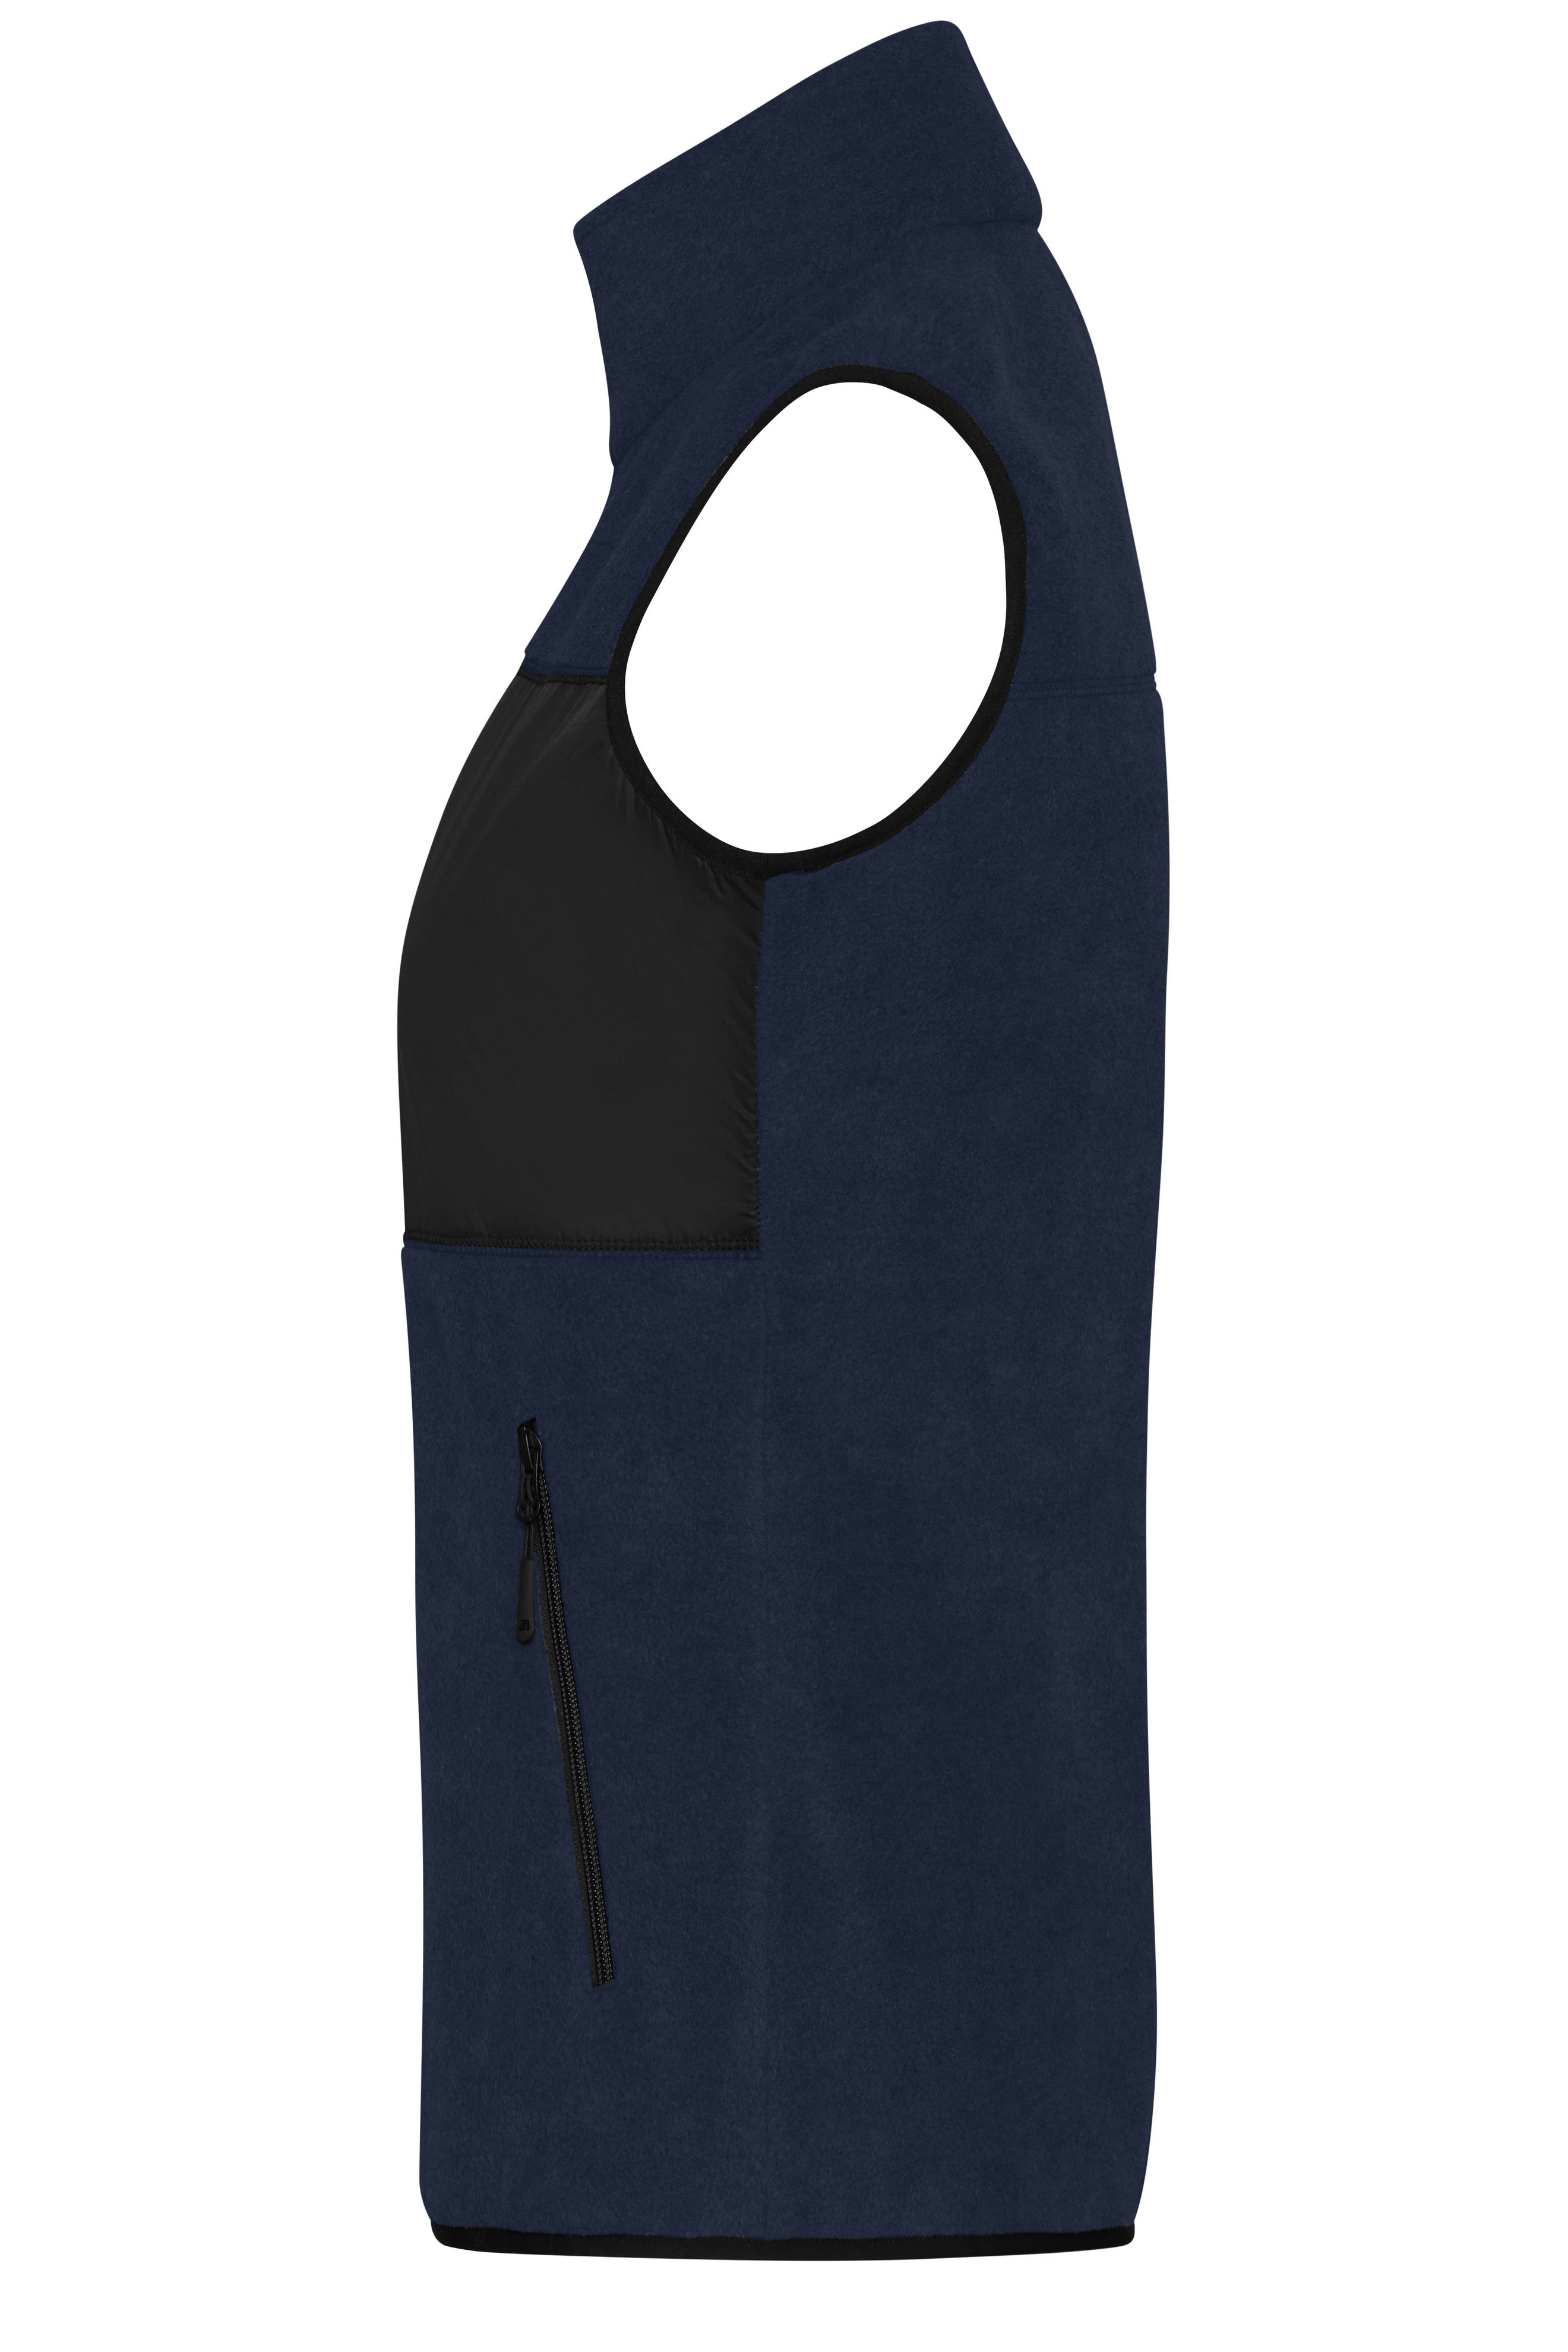 Ladies' Fleece Vest JN1309 Fleeceweste im Materialmix